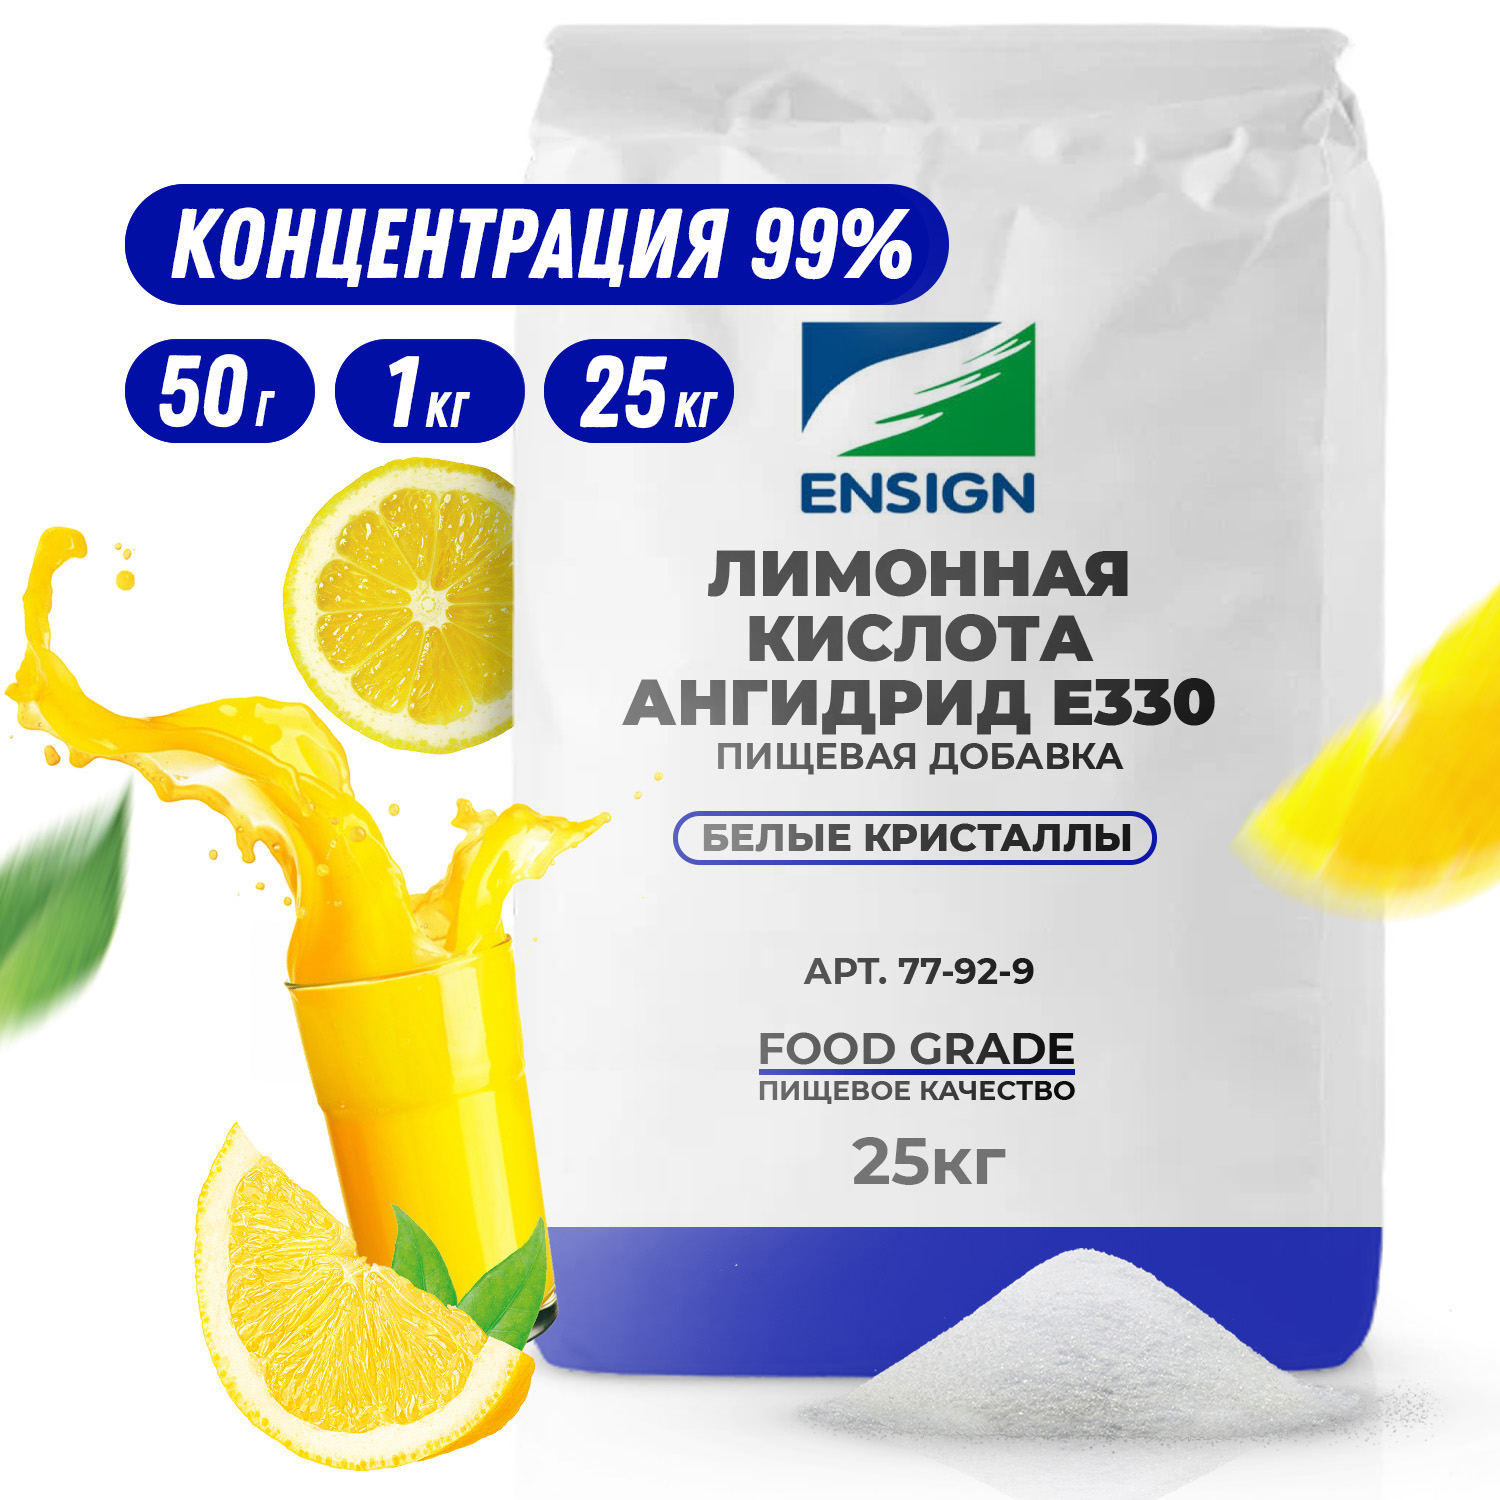 Лимонная кислота ангидрид Е330